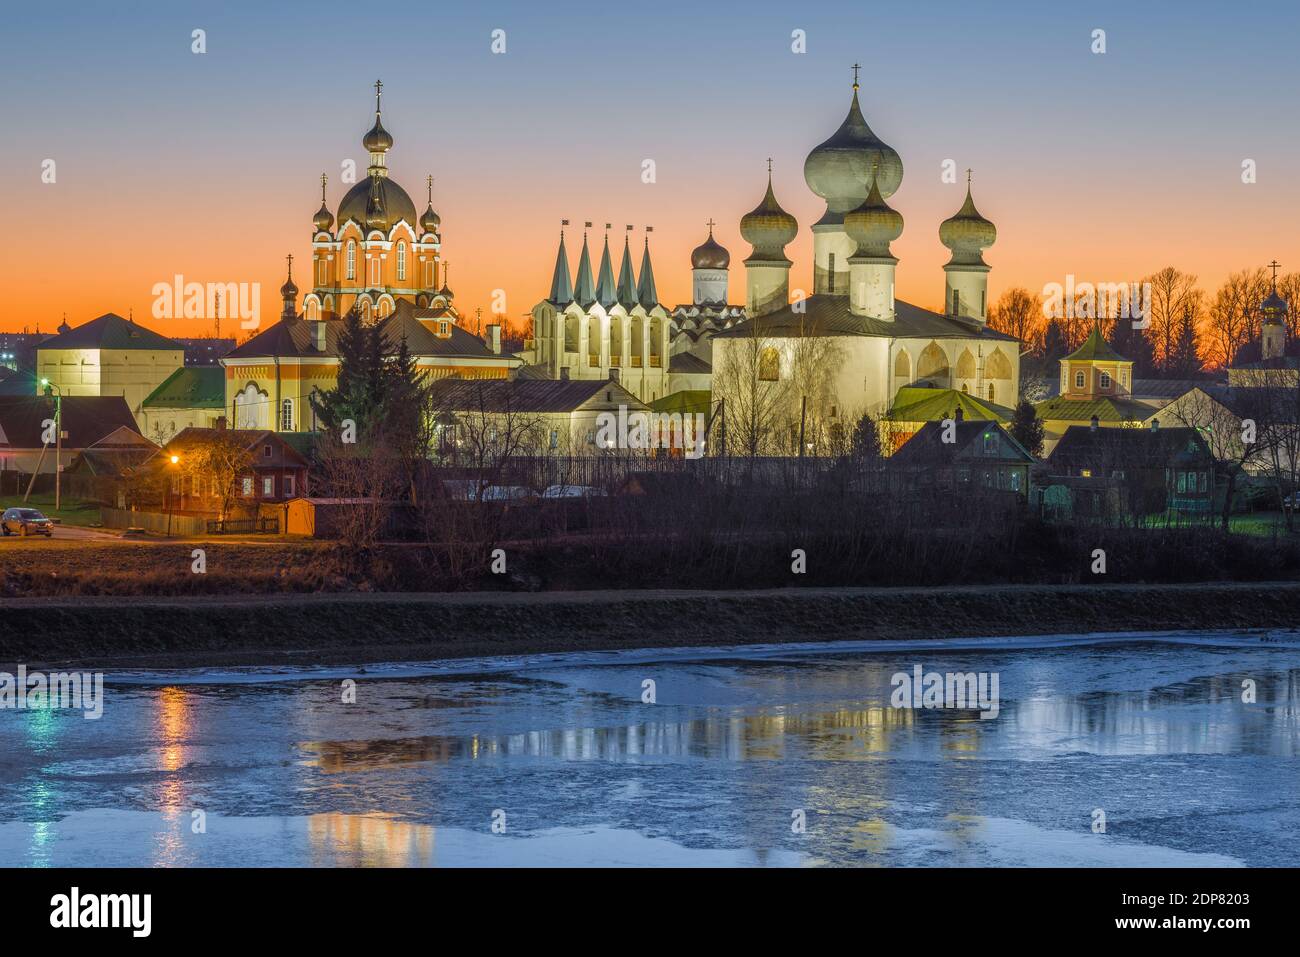 Blick auf die Tempel des Tichvin Theotokos Himmelfahrt-Klosters im Dezember Sonnenuntergang. Leningrad, Russland Stockfoto